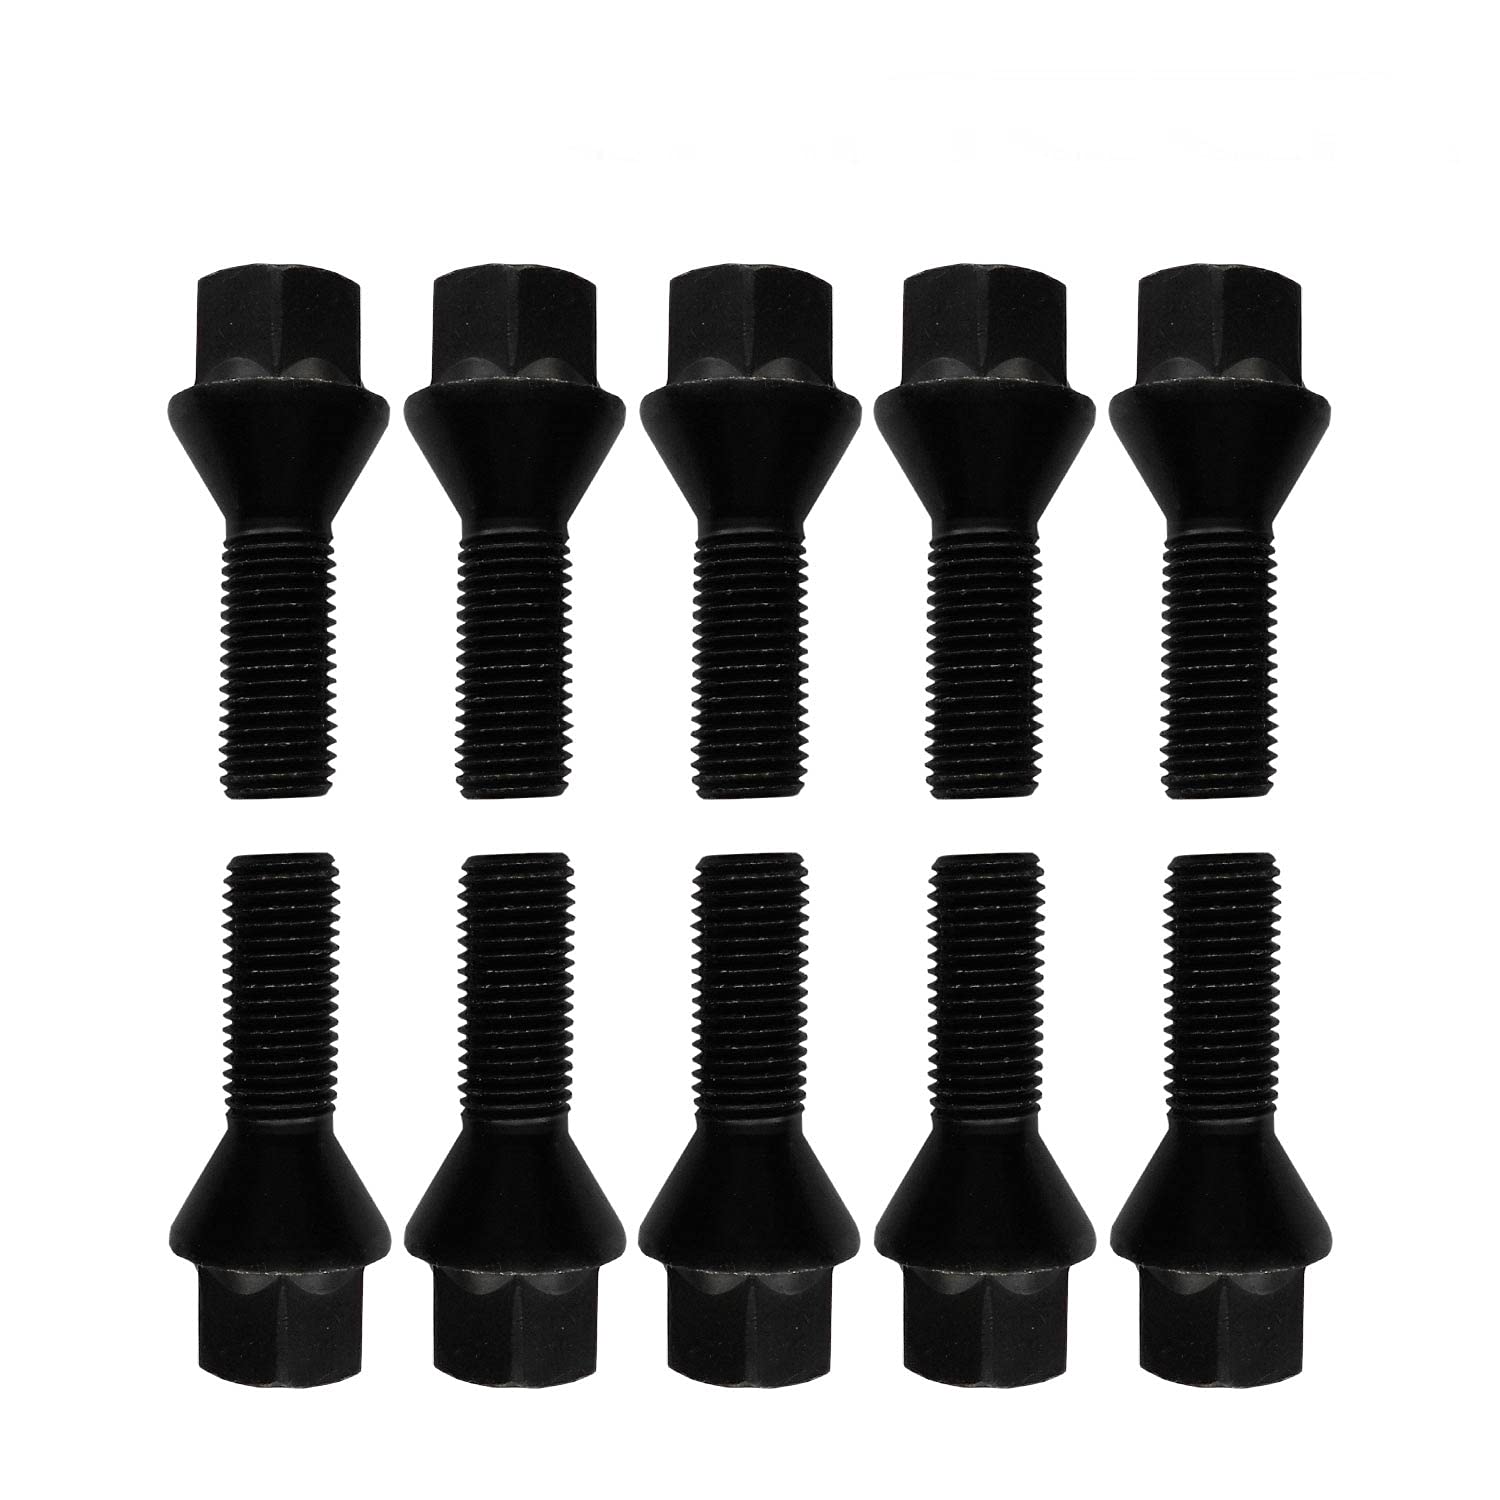 10 Radschrauben Radbolzen schwarz Kegelbund M12x1,5 45mm